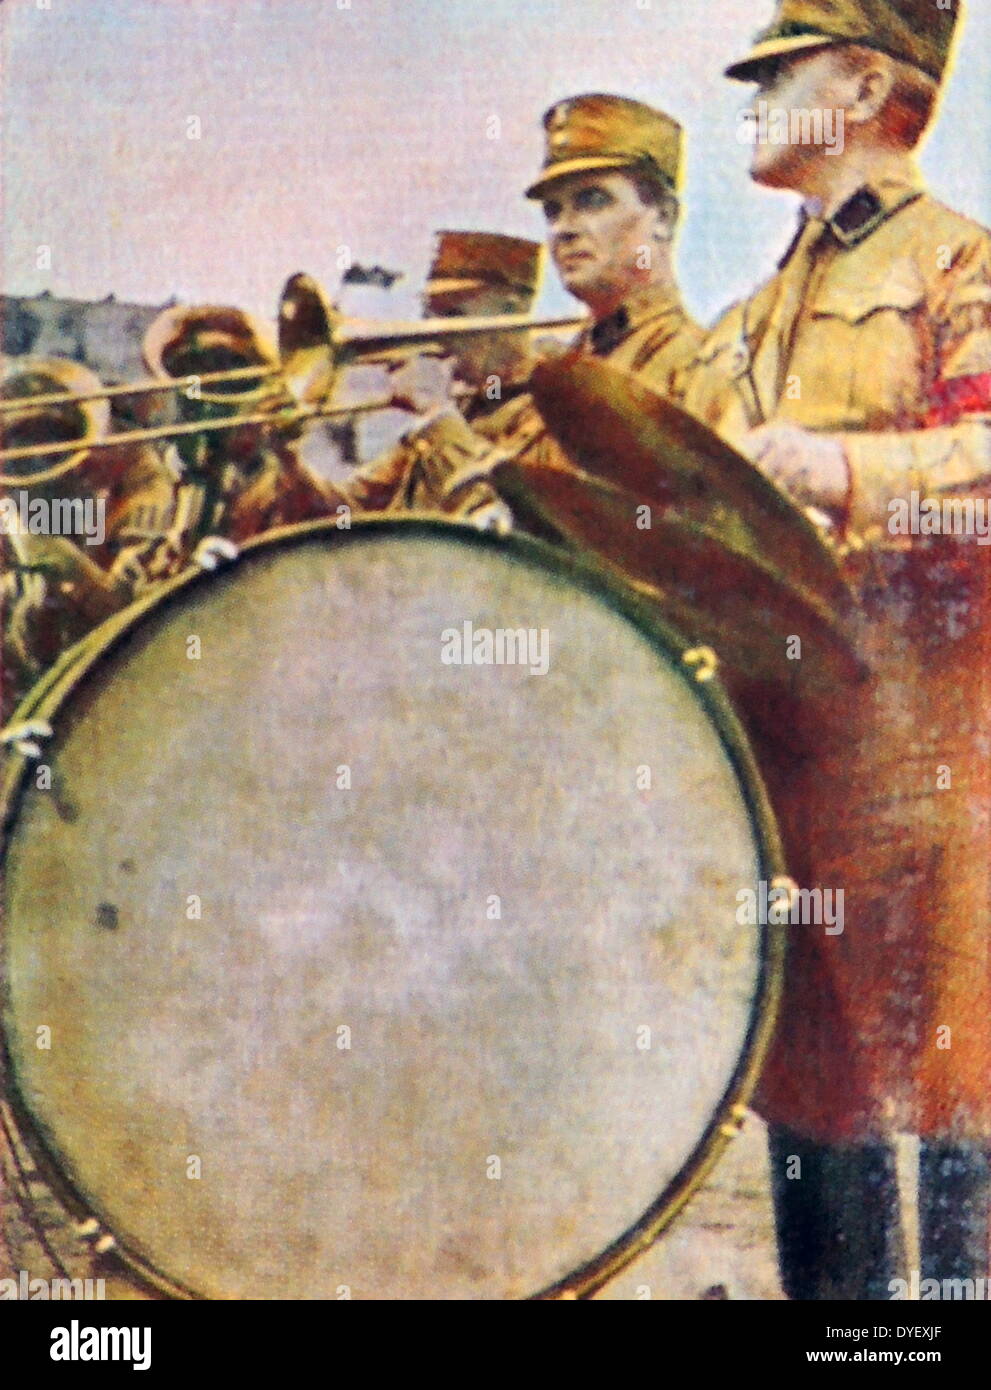 NS-uniformierten Musiker Palying Instrument auf einer Kundgebung. Deutschland ca. 1932 Stockfoto